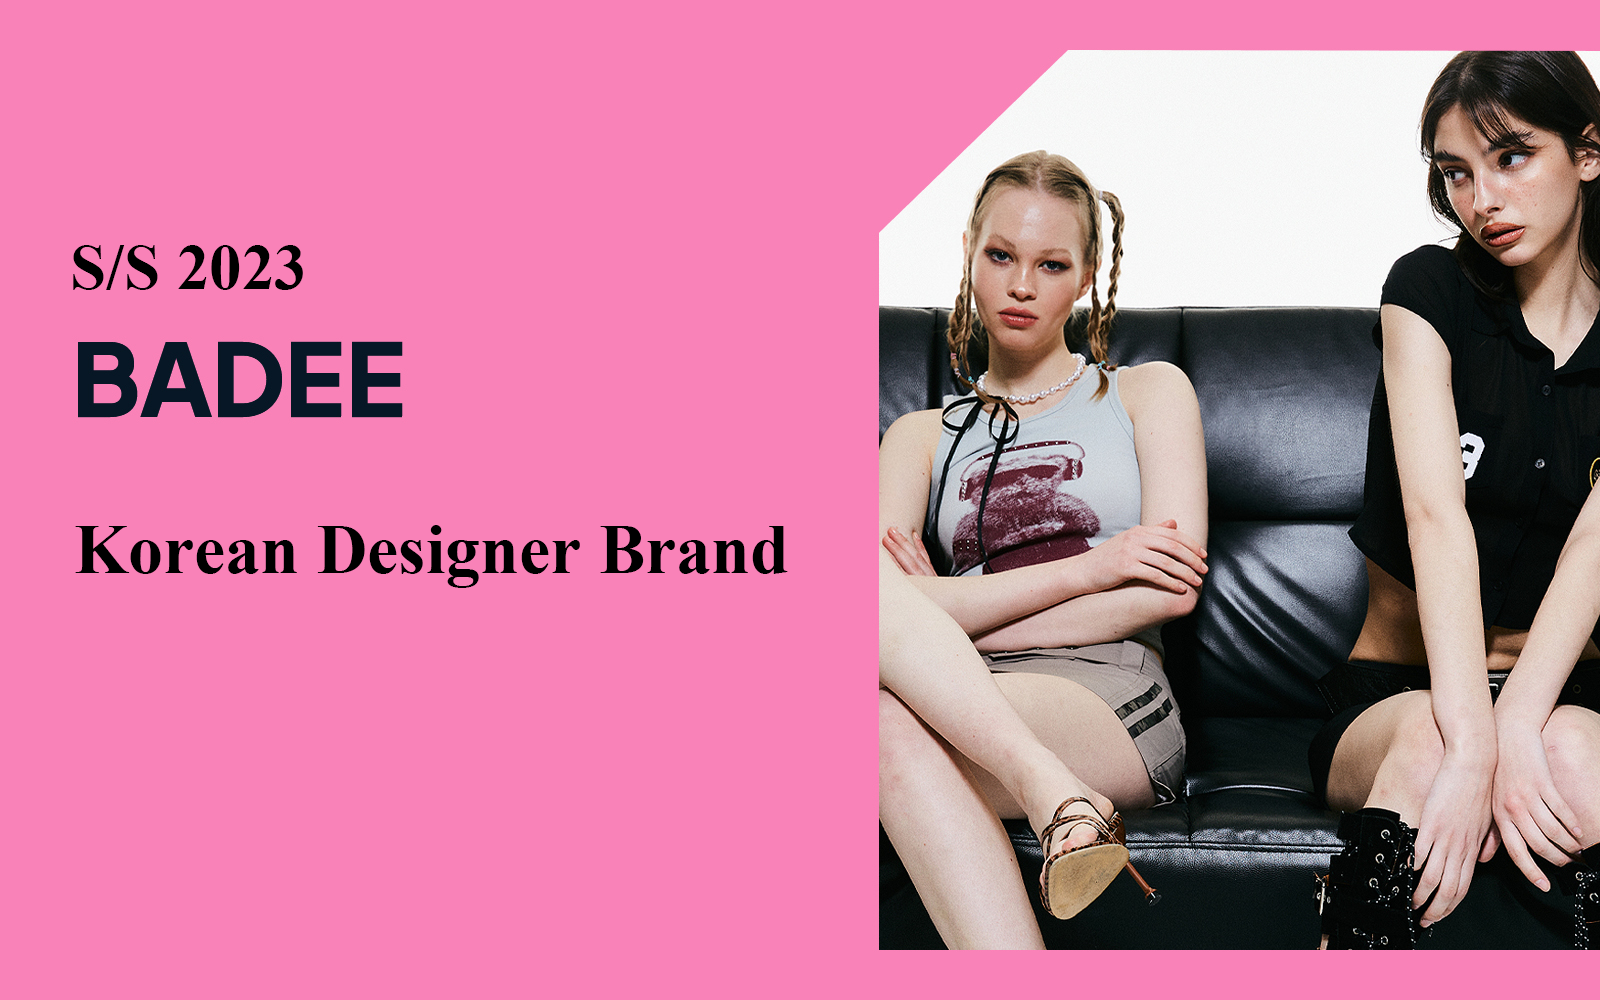 The Analysis of BADEE The Korean Designer Brand